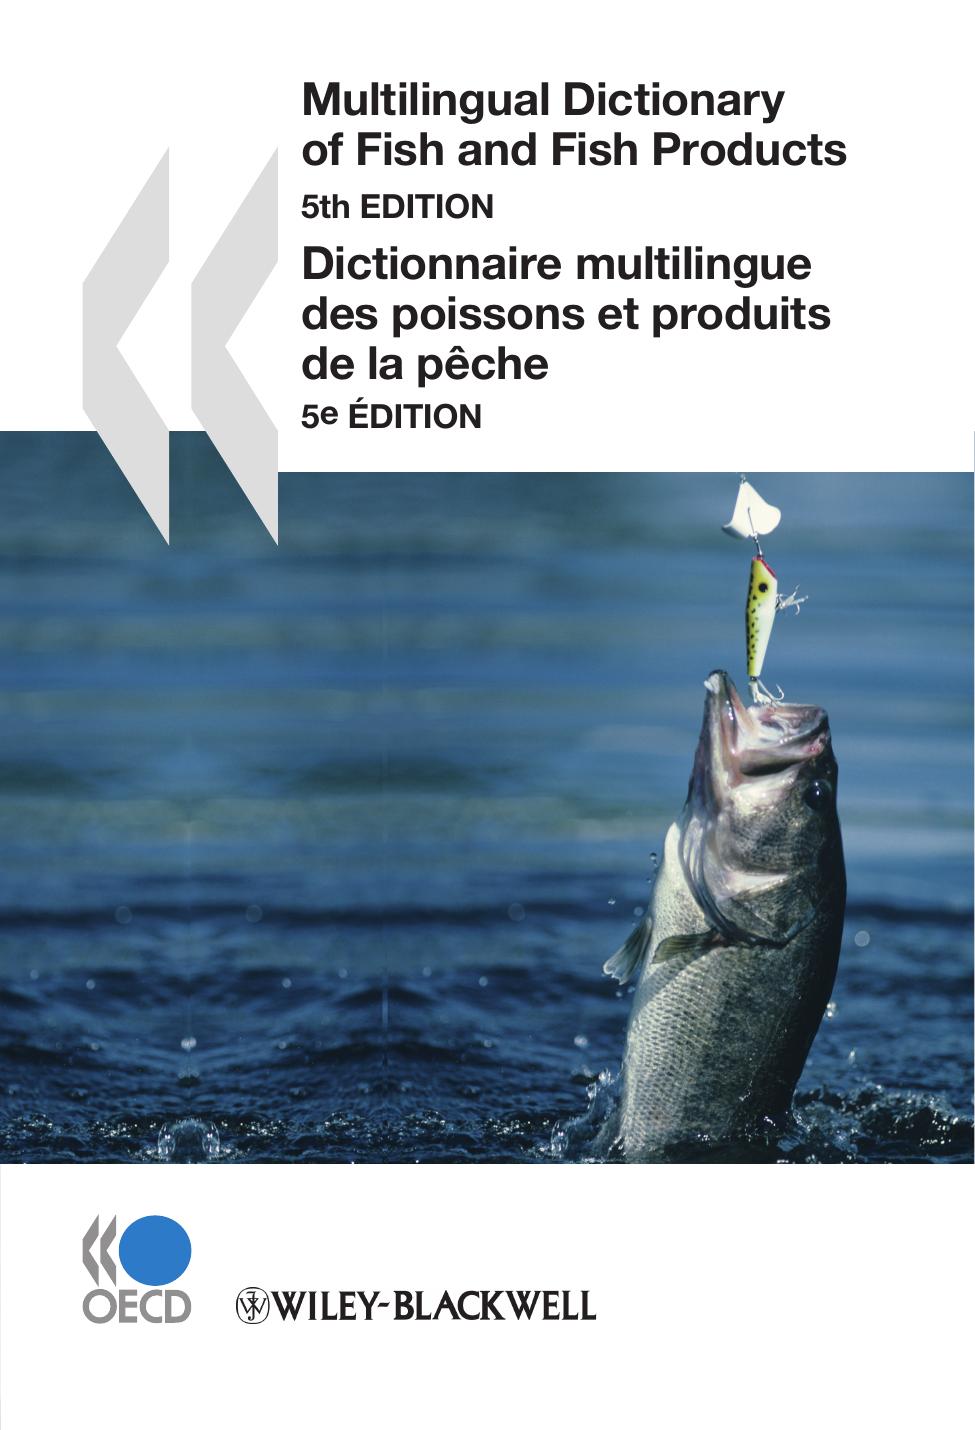 Multilingual Dictionary of Fish and Fish Products / Dictionnaire multilingue des poissons et produits de la pêche